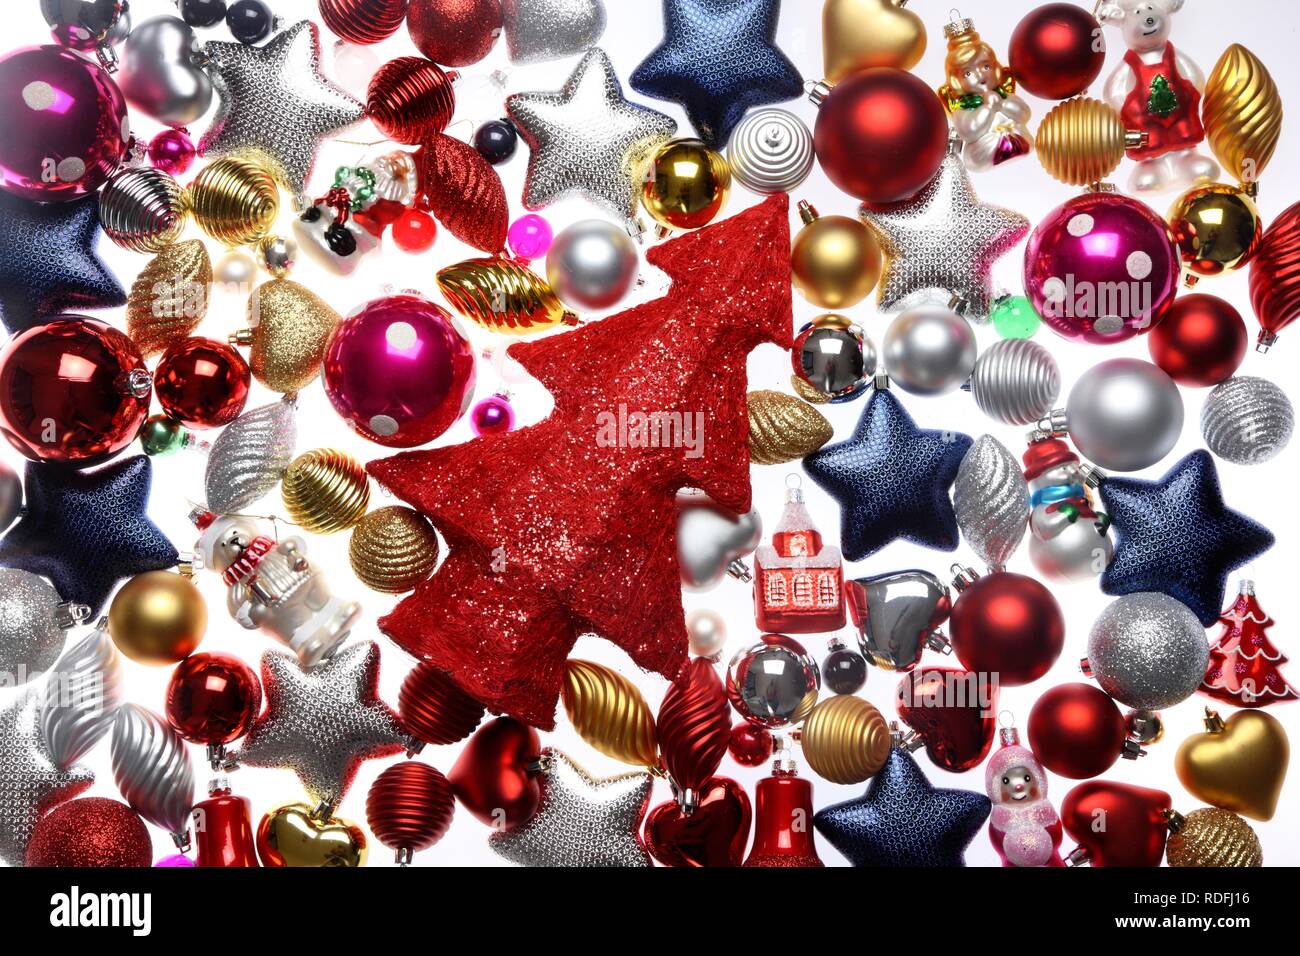 Weihnachtsschmuck, verschiedenen Christbaum Kugeln und einem roten Weihnachtsbaum Stockfoto